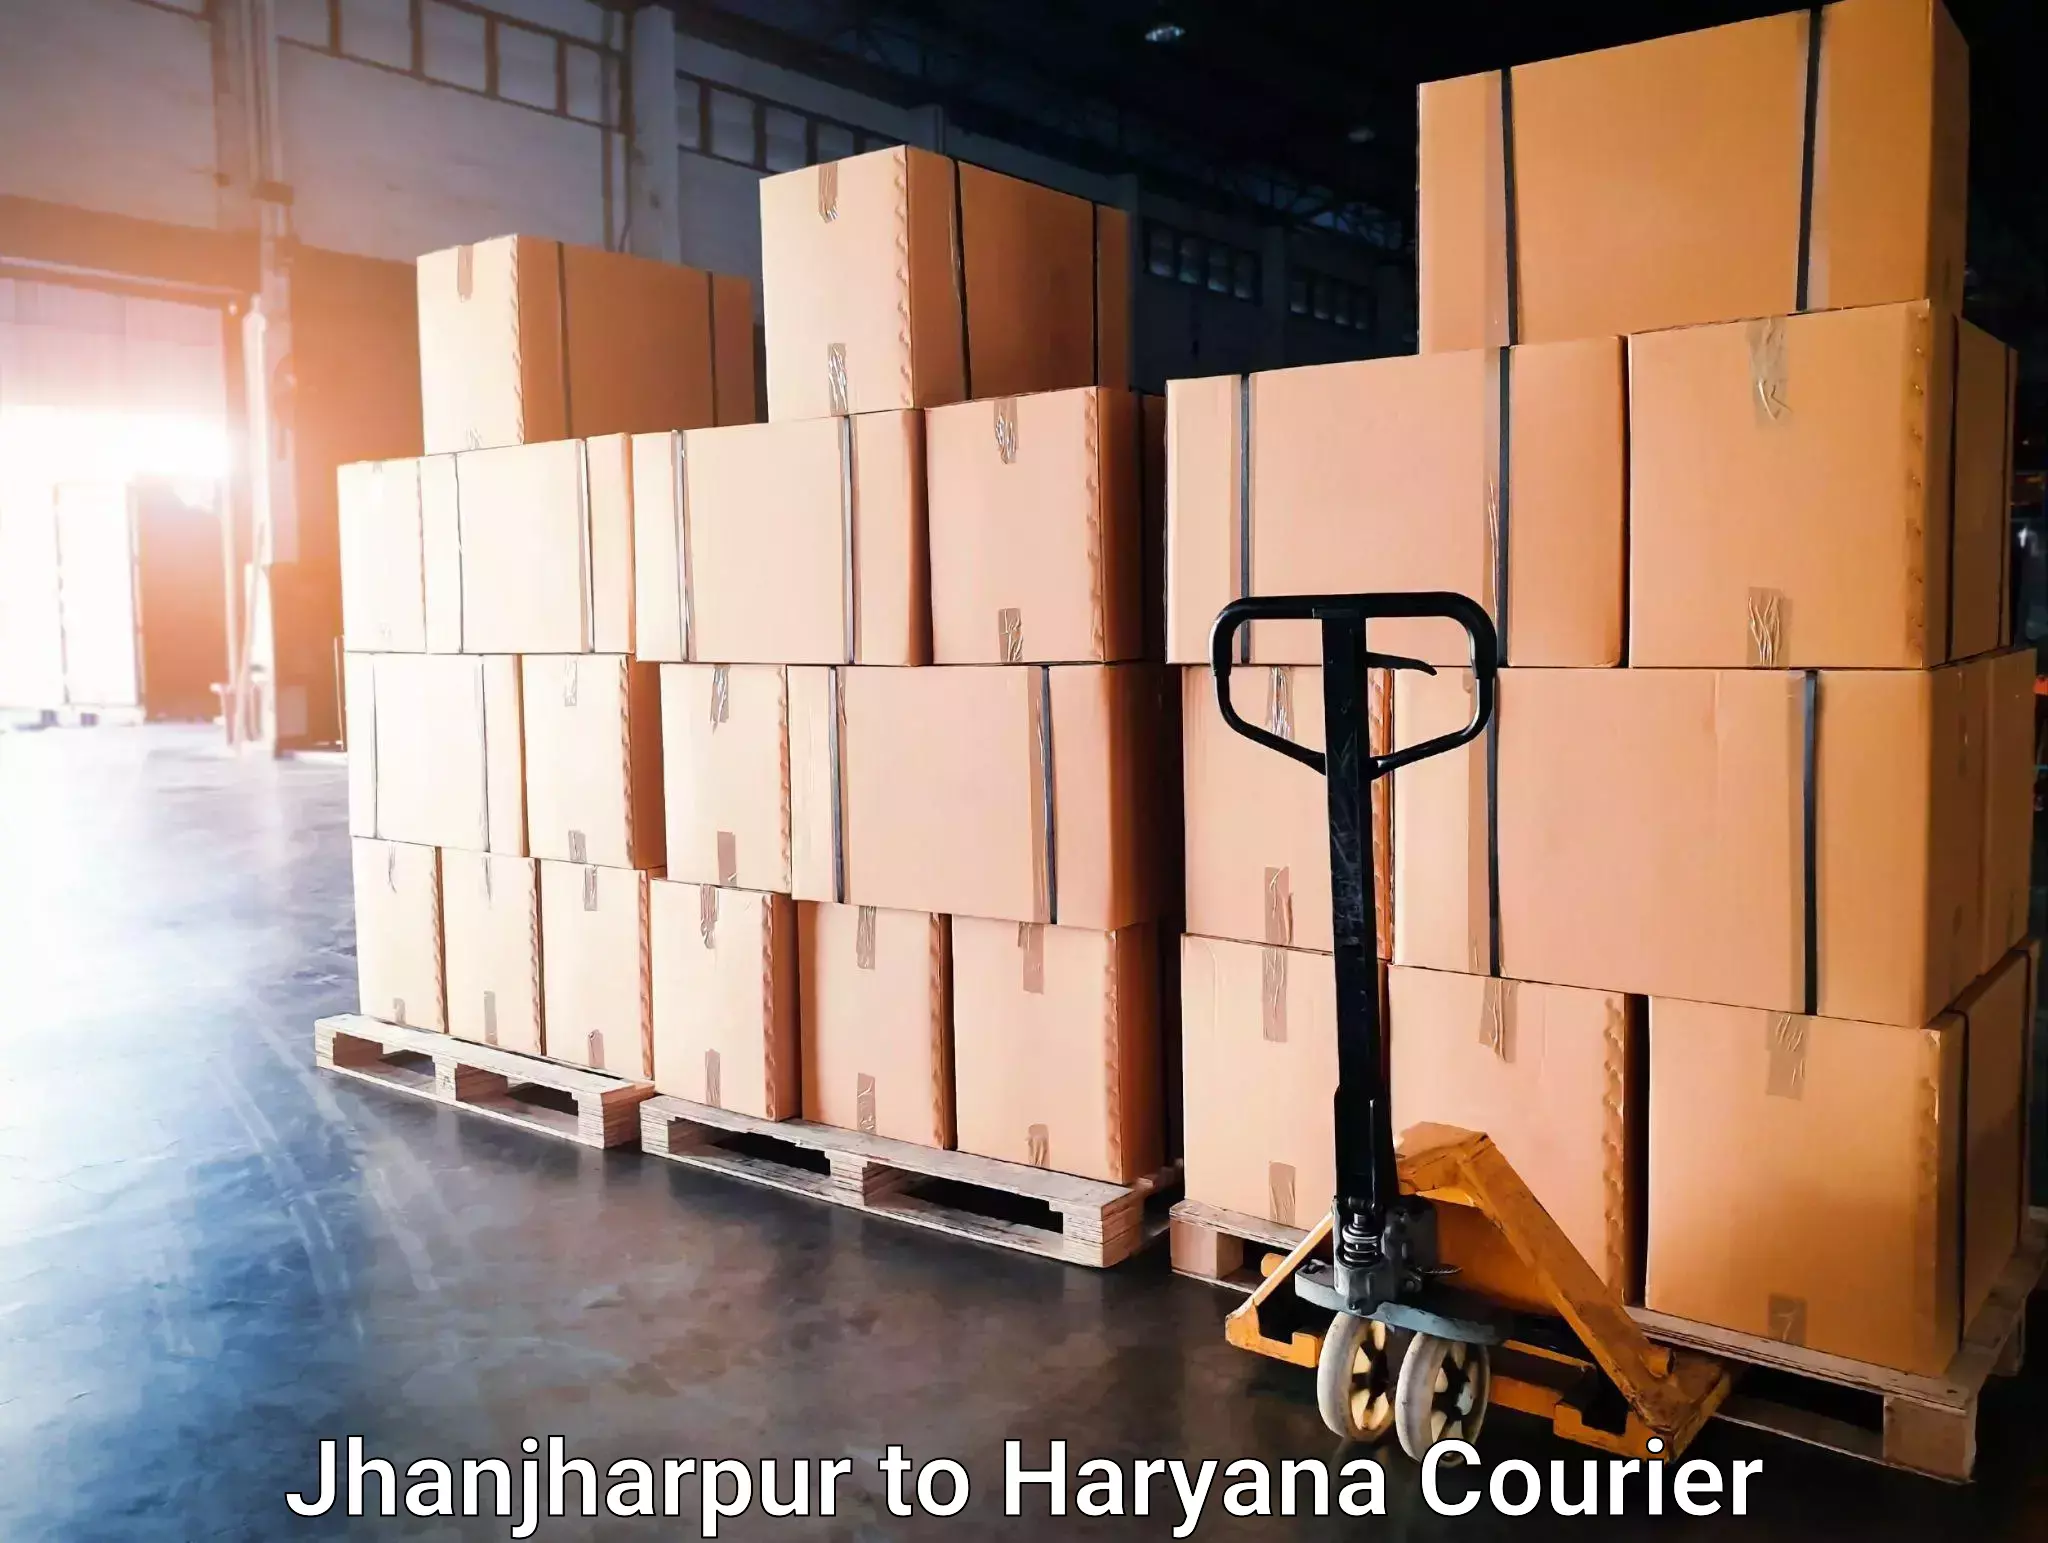 Seamless moving process Jhanjharpur to Haryana